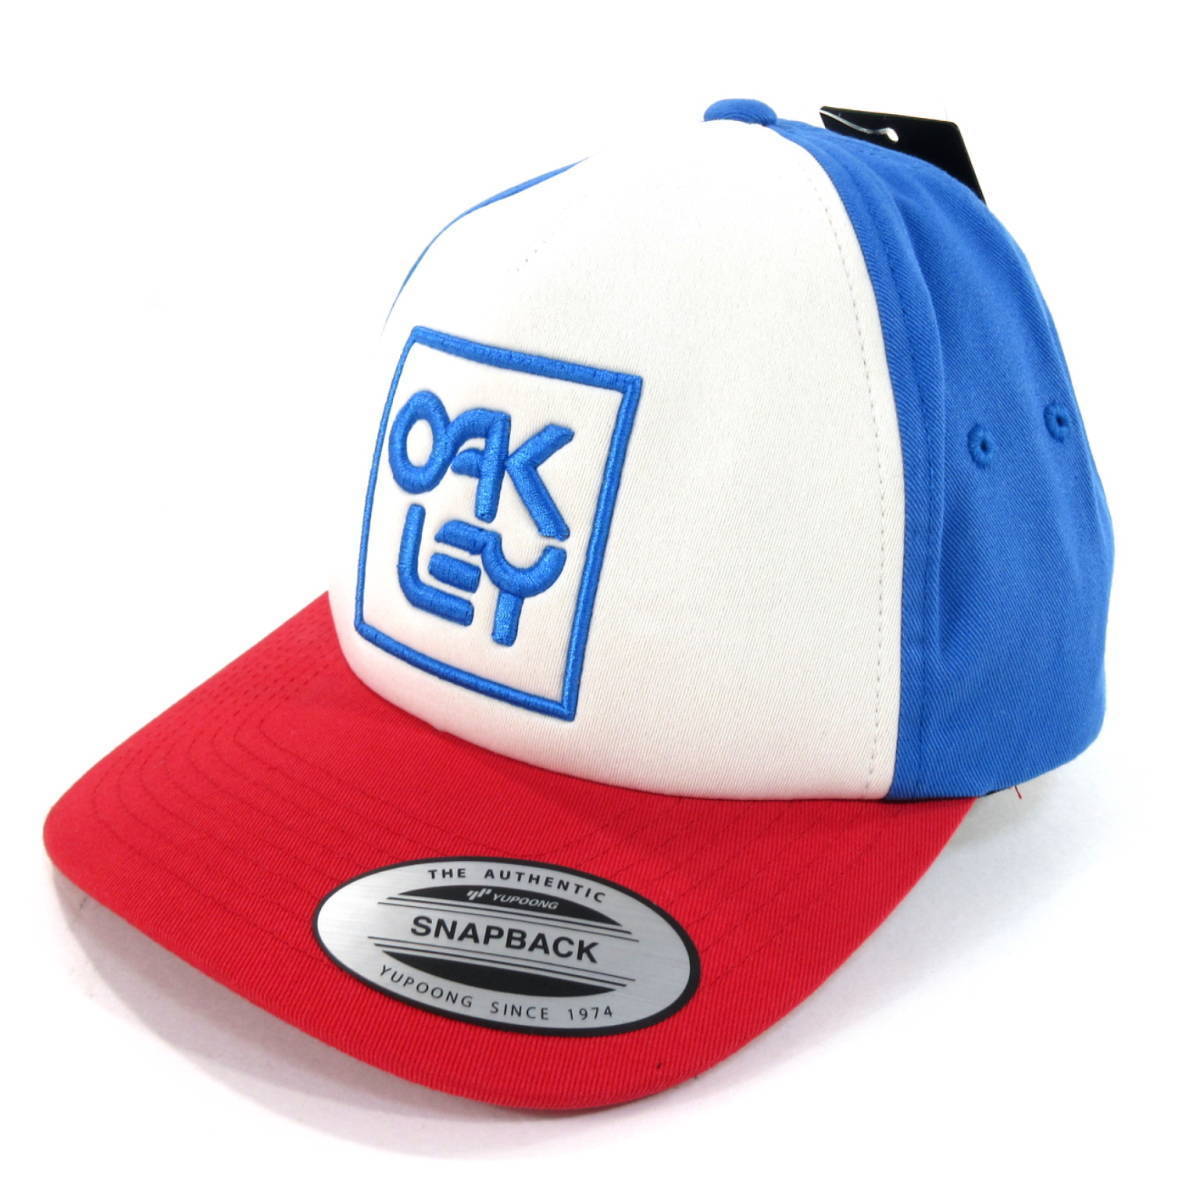 新品◆OAKLEY◆SNAPBACK LOGO HAT フリーサイズ 青/白/赤◆オークリー ゴルフキャップ 帽子 スナップバック ロゴ刺繍◆J1850d_画像1